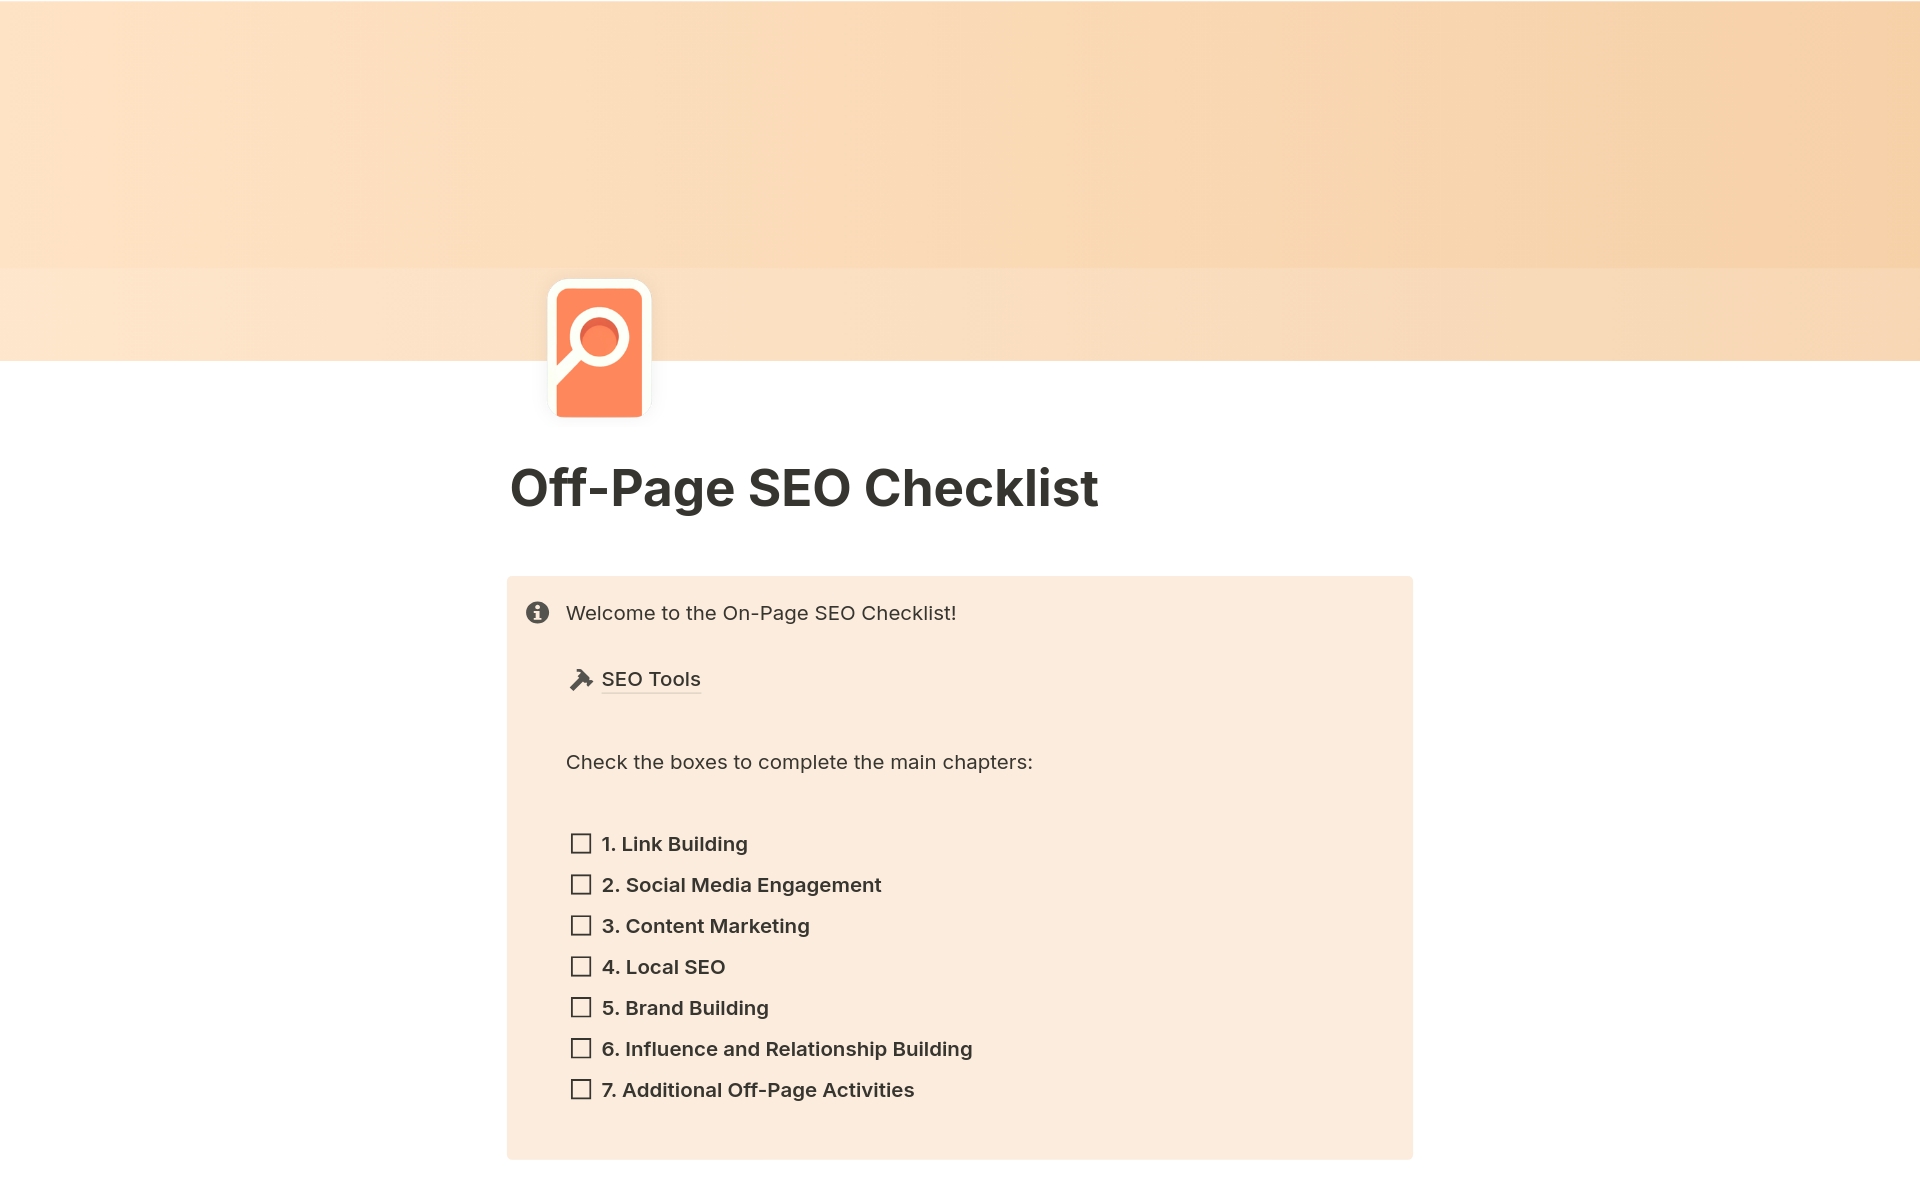 Vista previa de una plantilla para Off-Page SEO Checklist